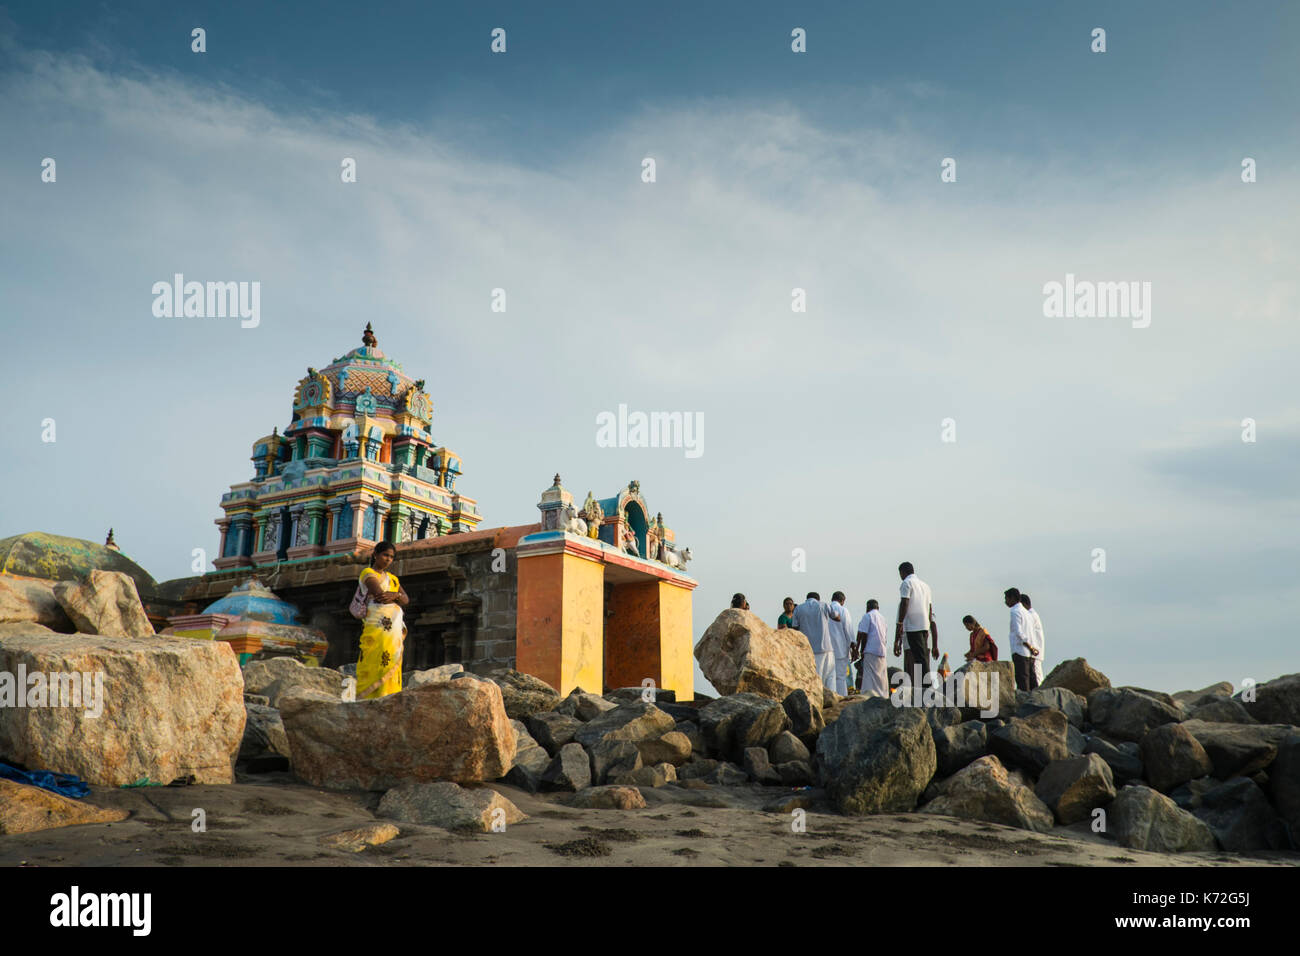 Die Masilamani Nathar Tempel auf den Strand von Tranquebar. Dieser Tempel überlebte den Tsunami von 2006. Dieser Tempel ist der älteste Monument, das hier als Stockfoto